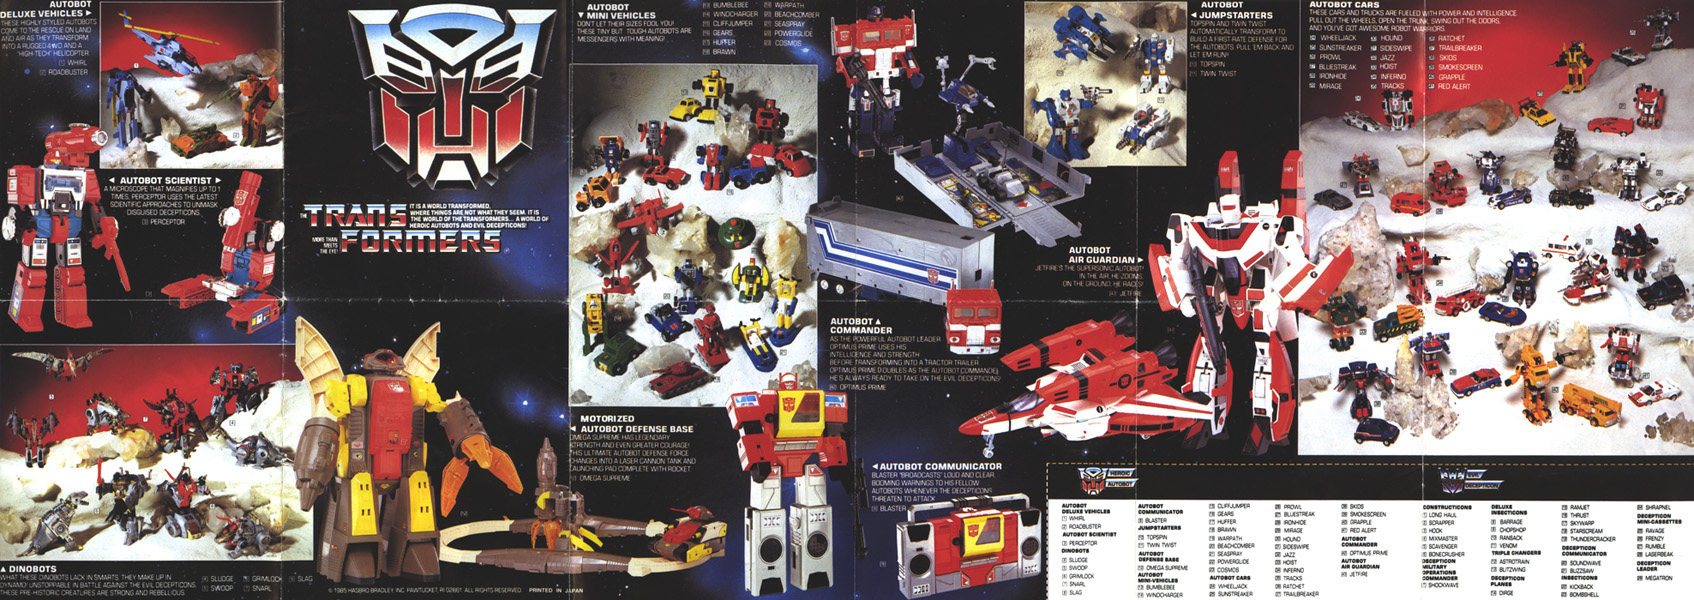 1985 Transformers - Unicron.com